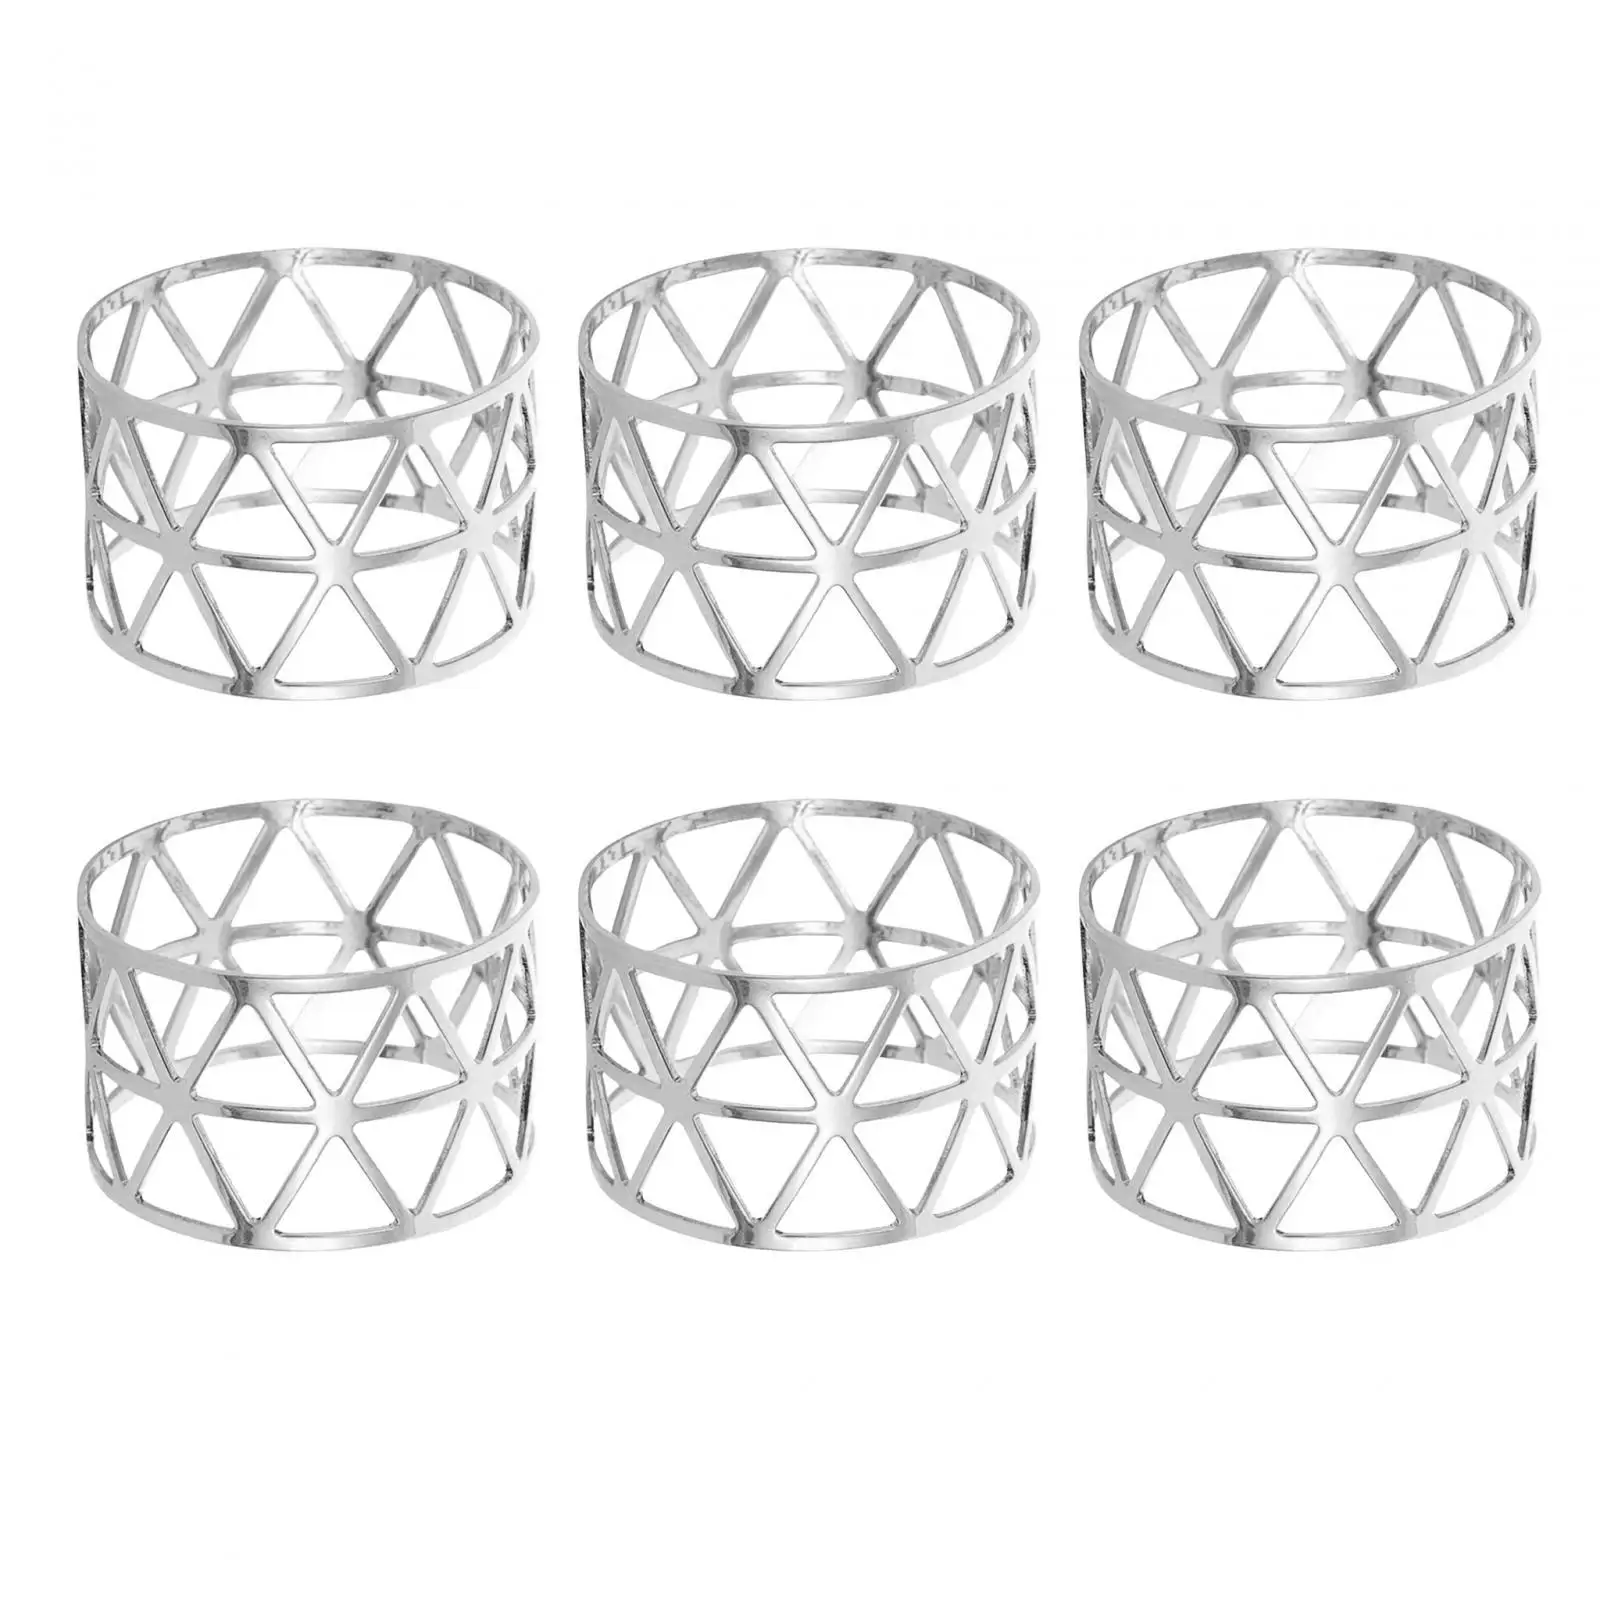 6x Napkin Rings Cloth Napkin Holders Decorative Metal Table Setting Napkin Rings